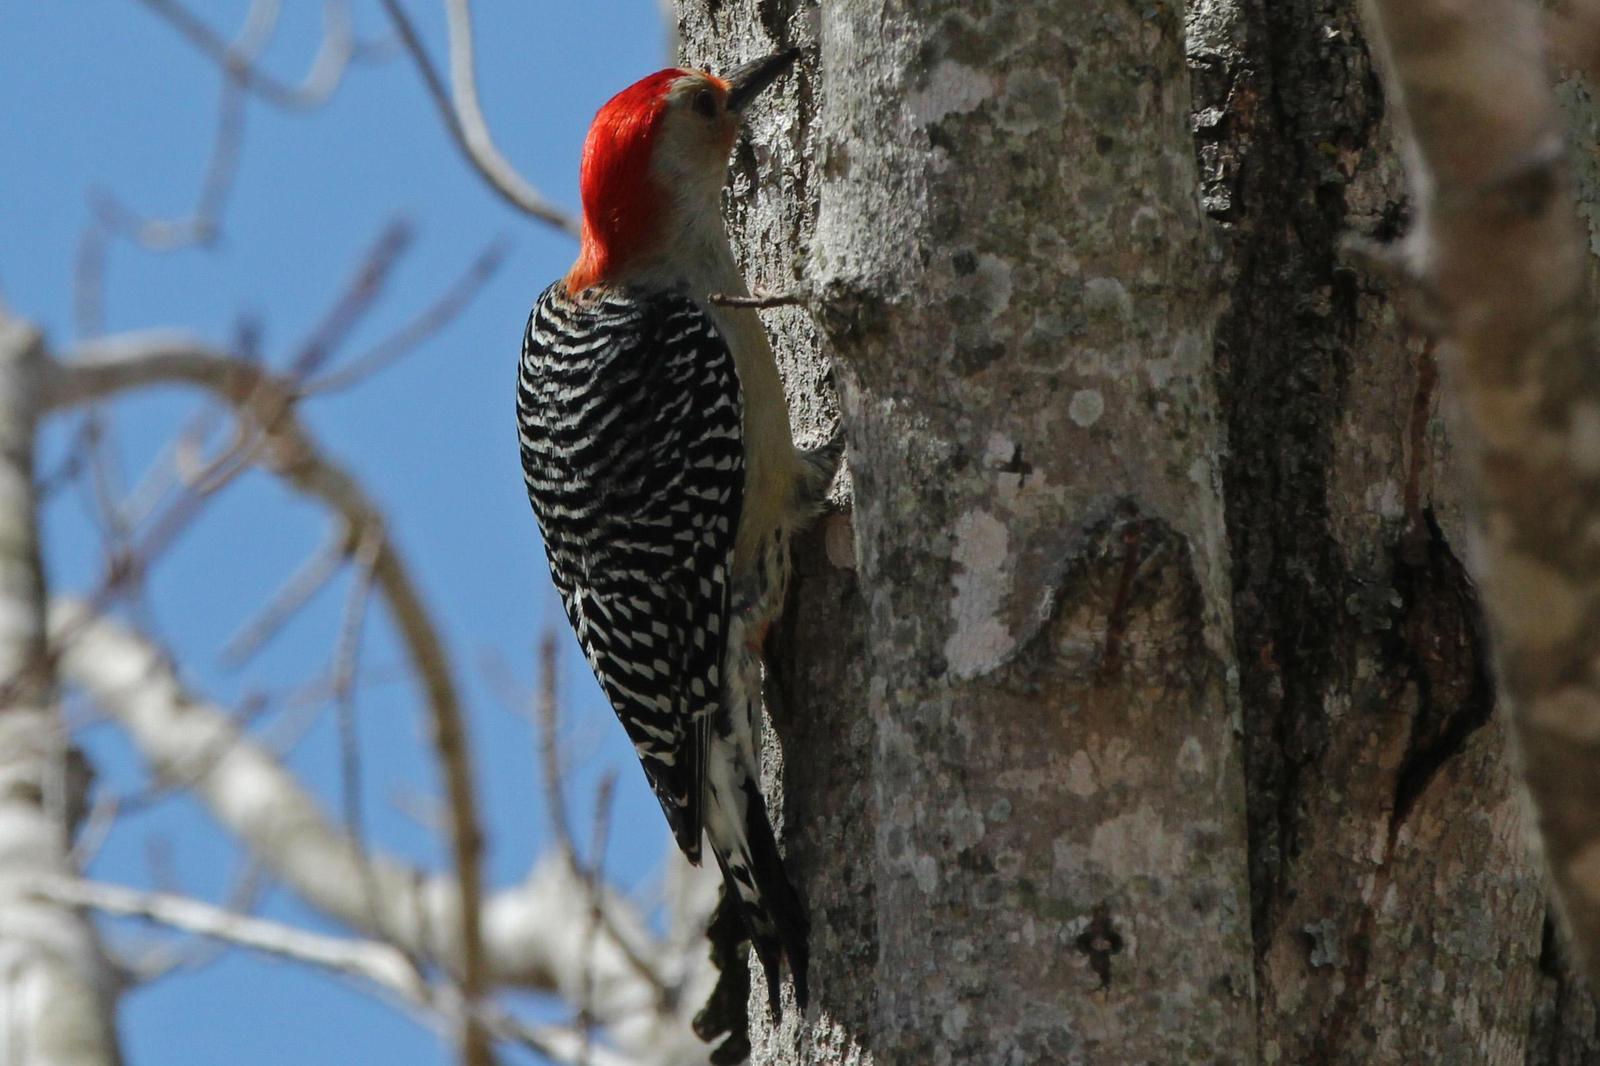 Red-bellied Woodpecker Photo by Kristy Baker